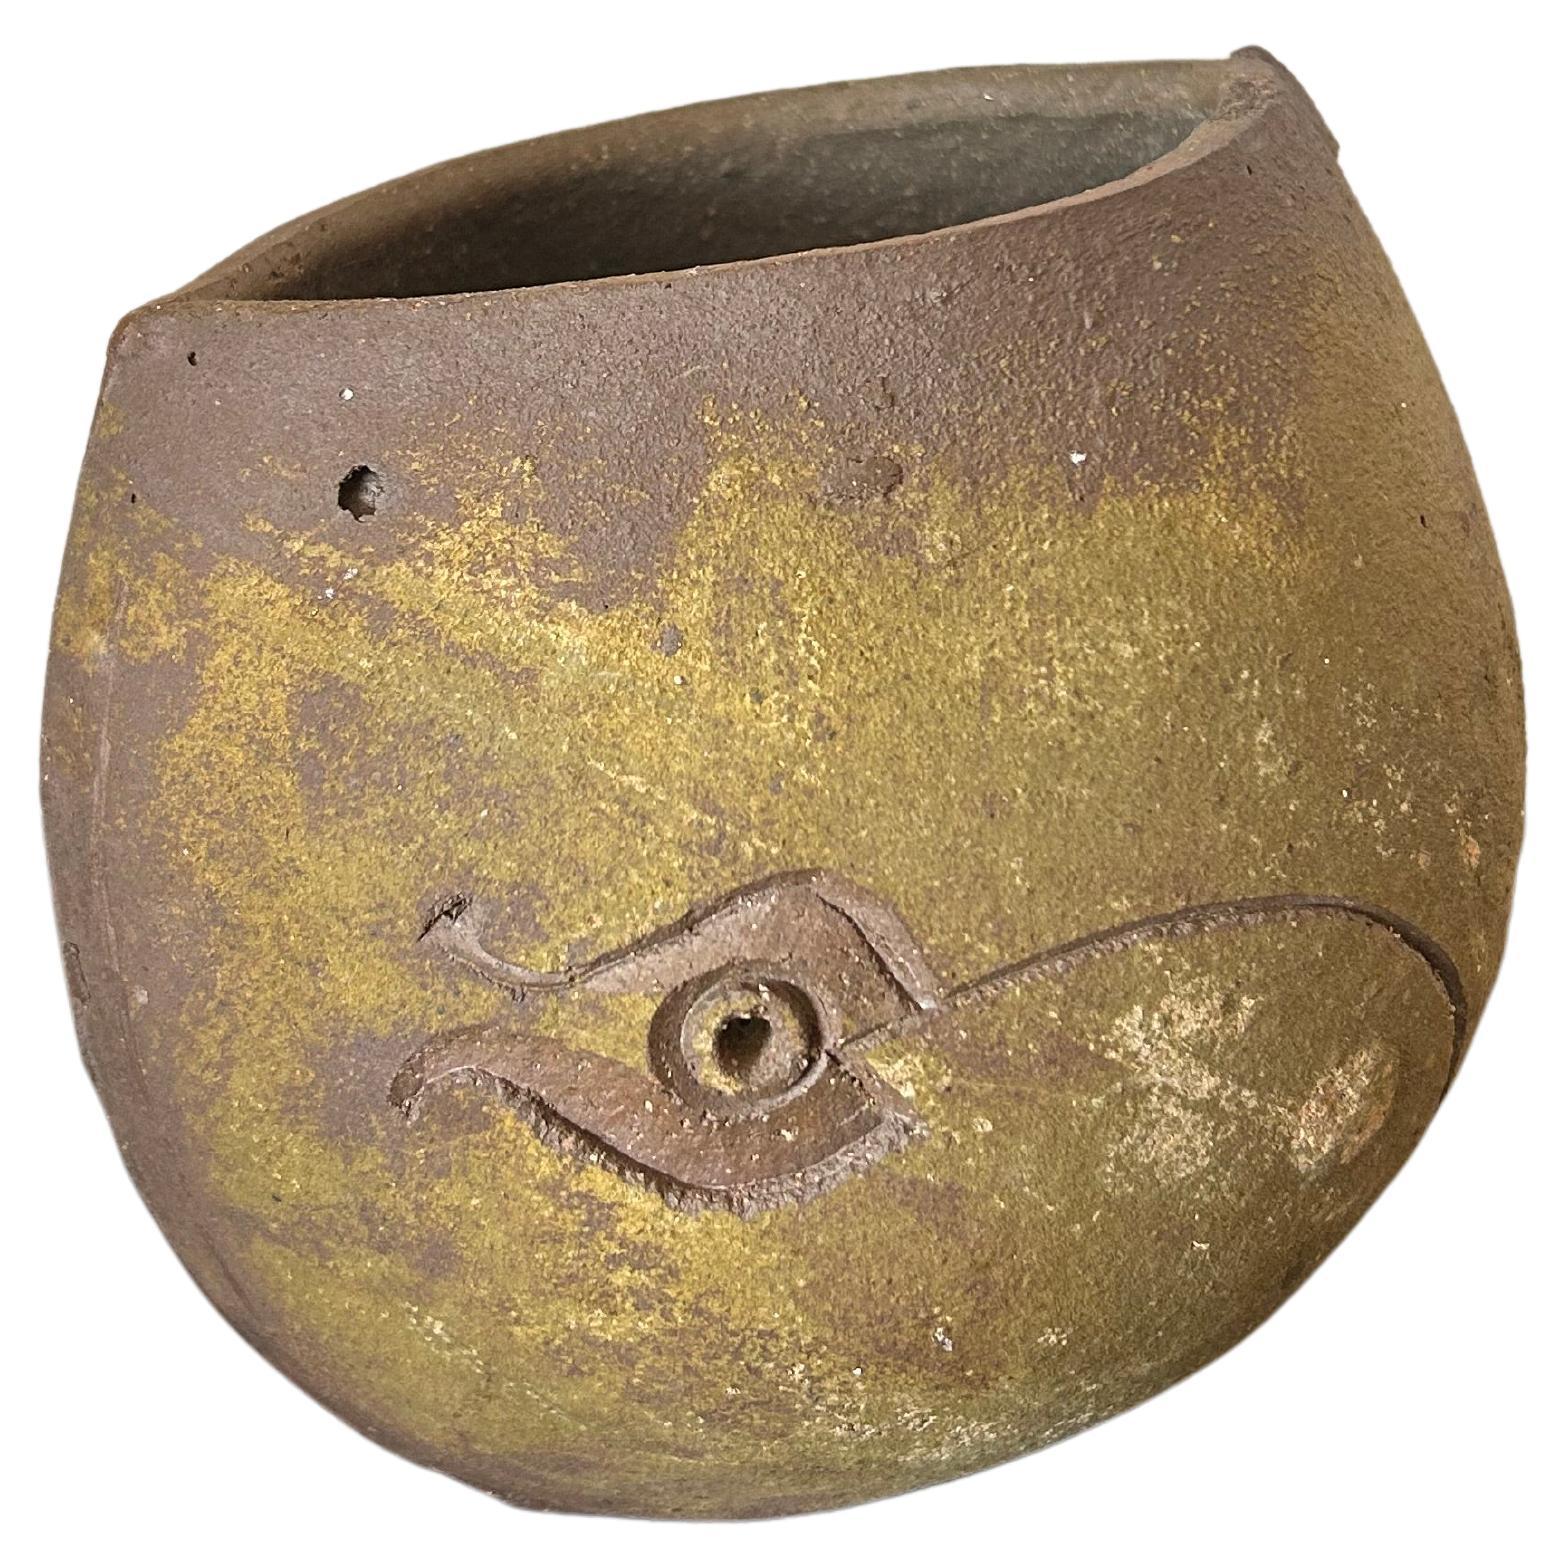 Paolo Soleri Ceramic Bowl with Fish Design